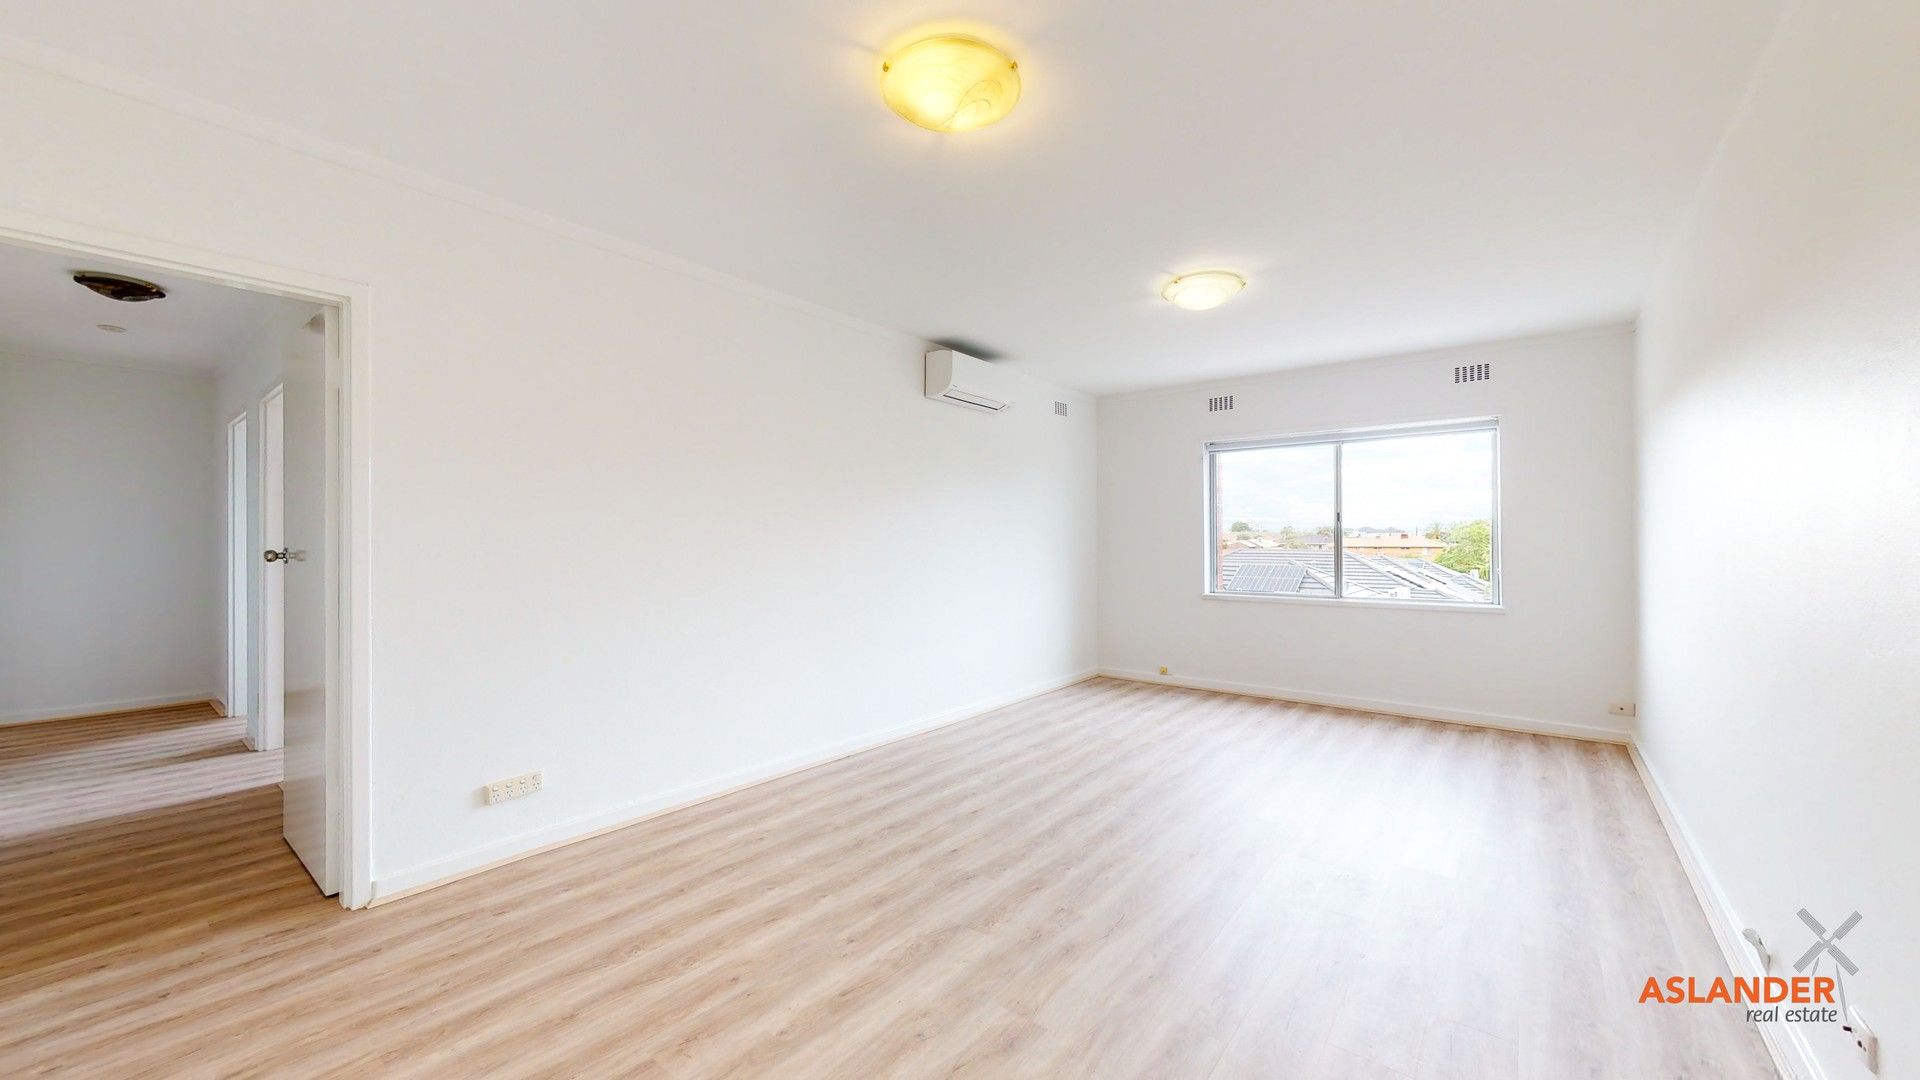 3 bedrooms Apartment / Unit / Flat in 11/185 Wanneroo Road TUART HILL WA, 6060